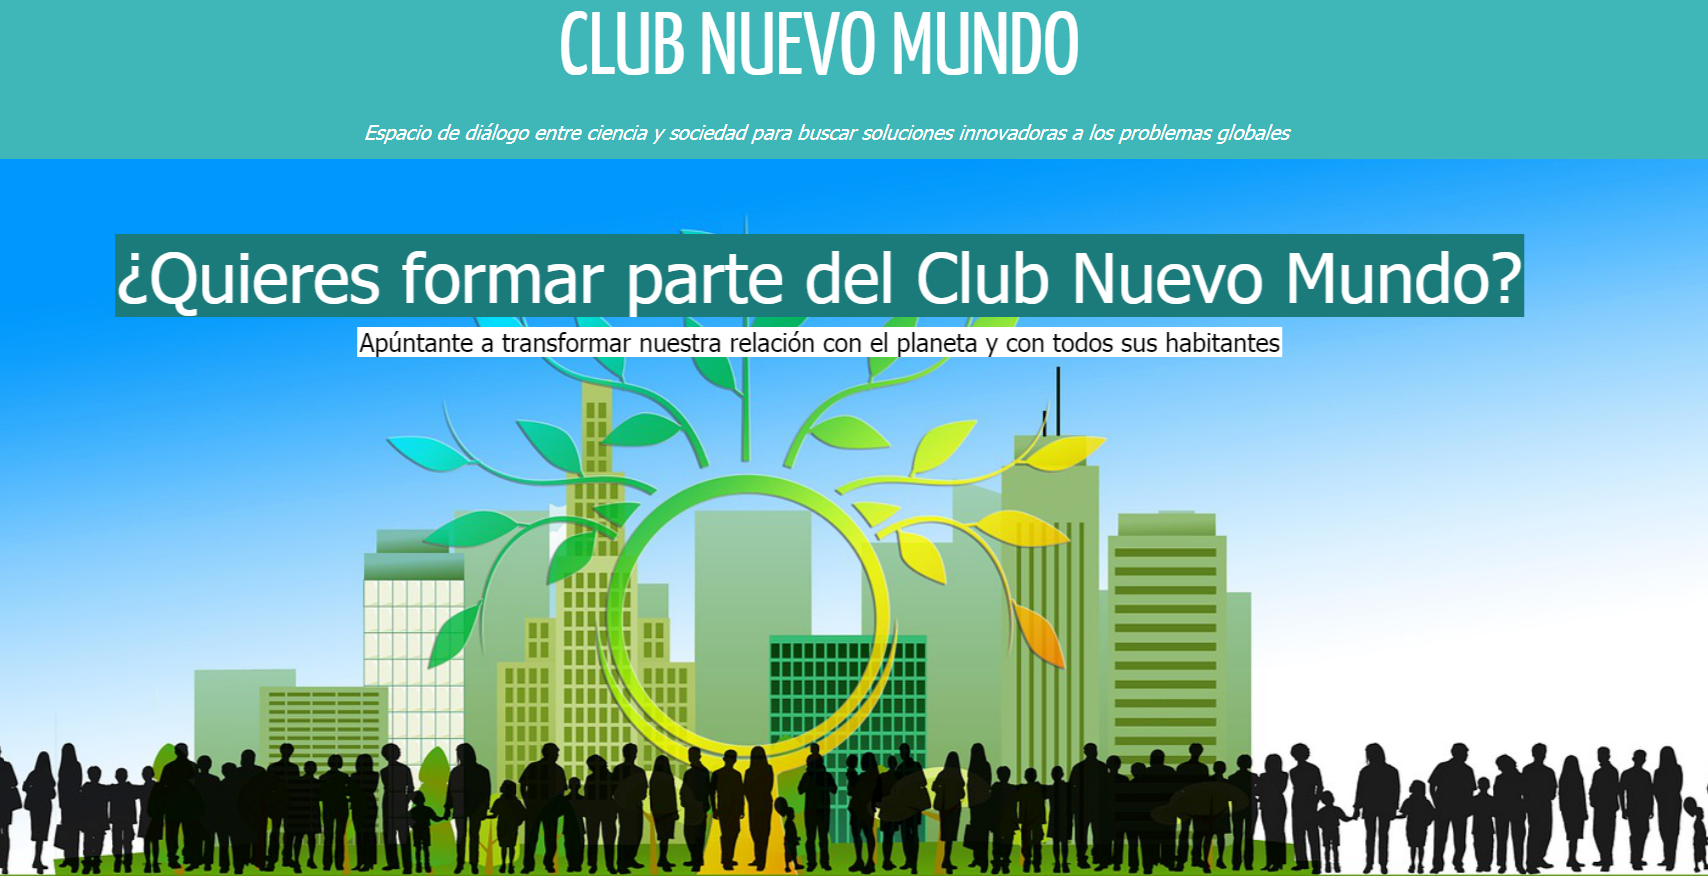 Así es la web del Club Nuevo Mundo. Foto: Tendencias21